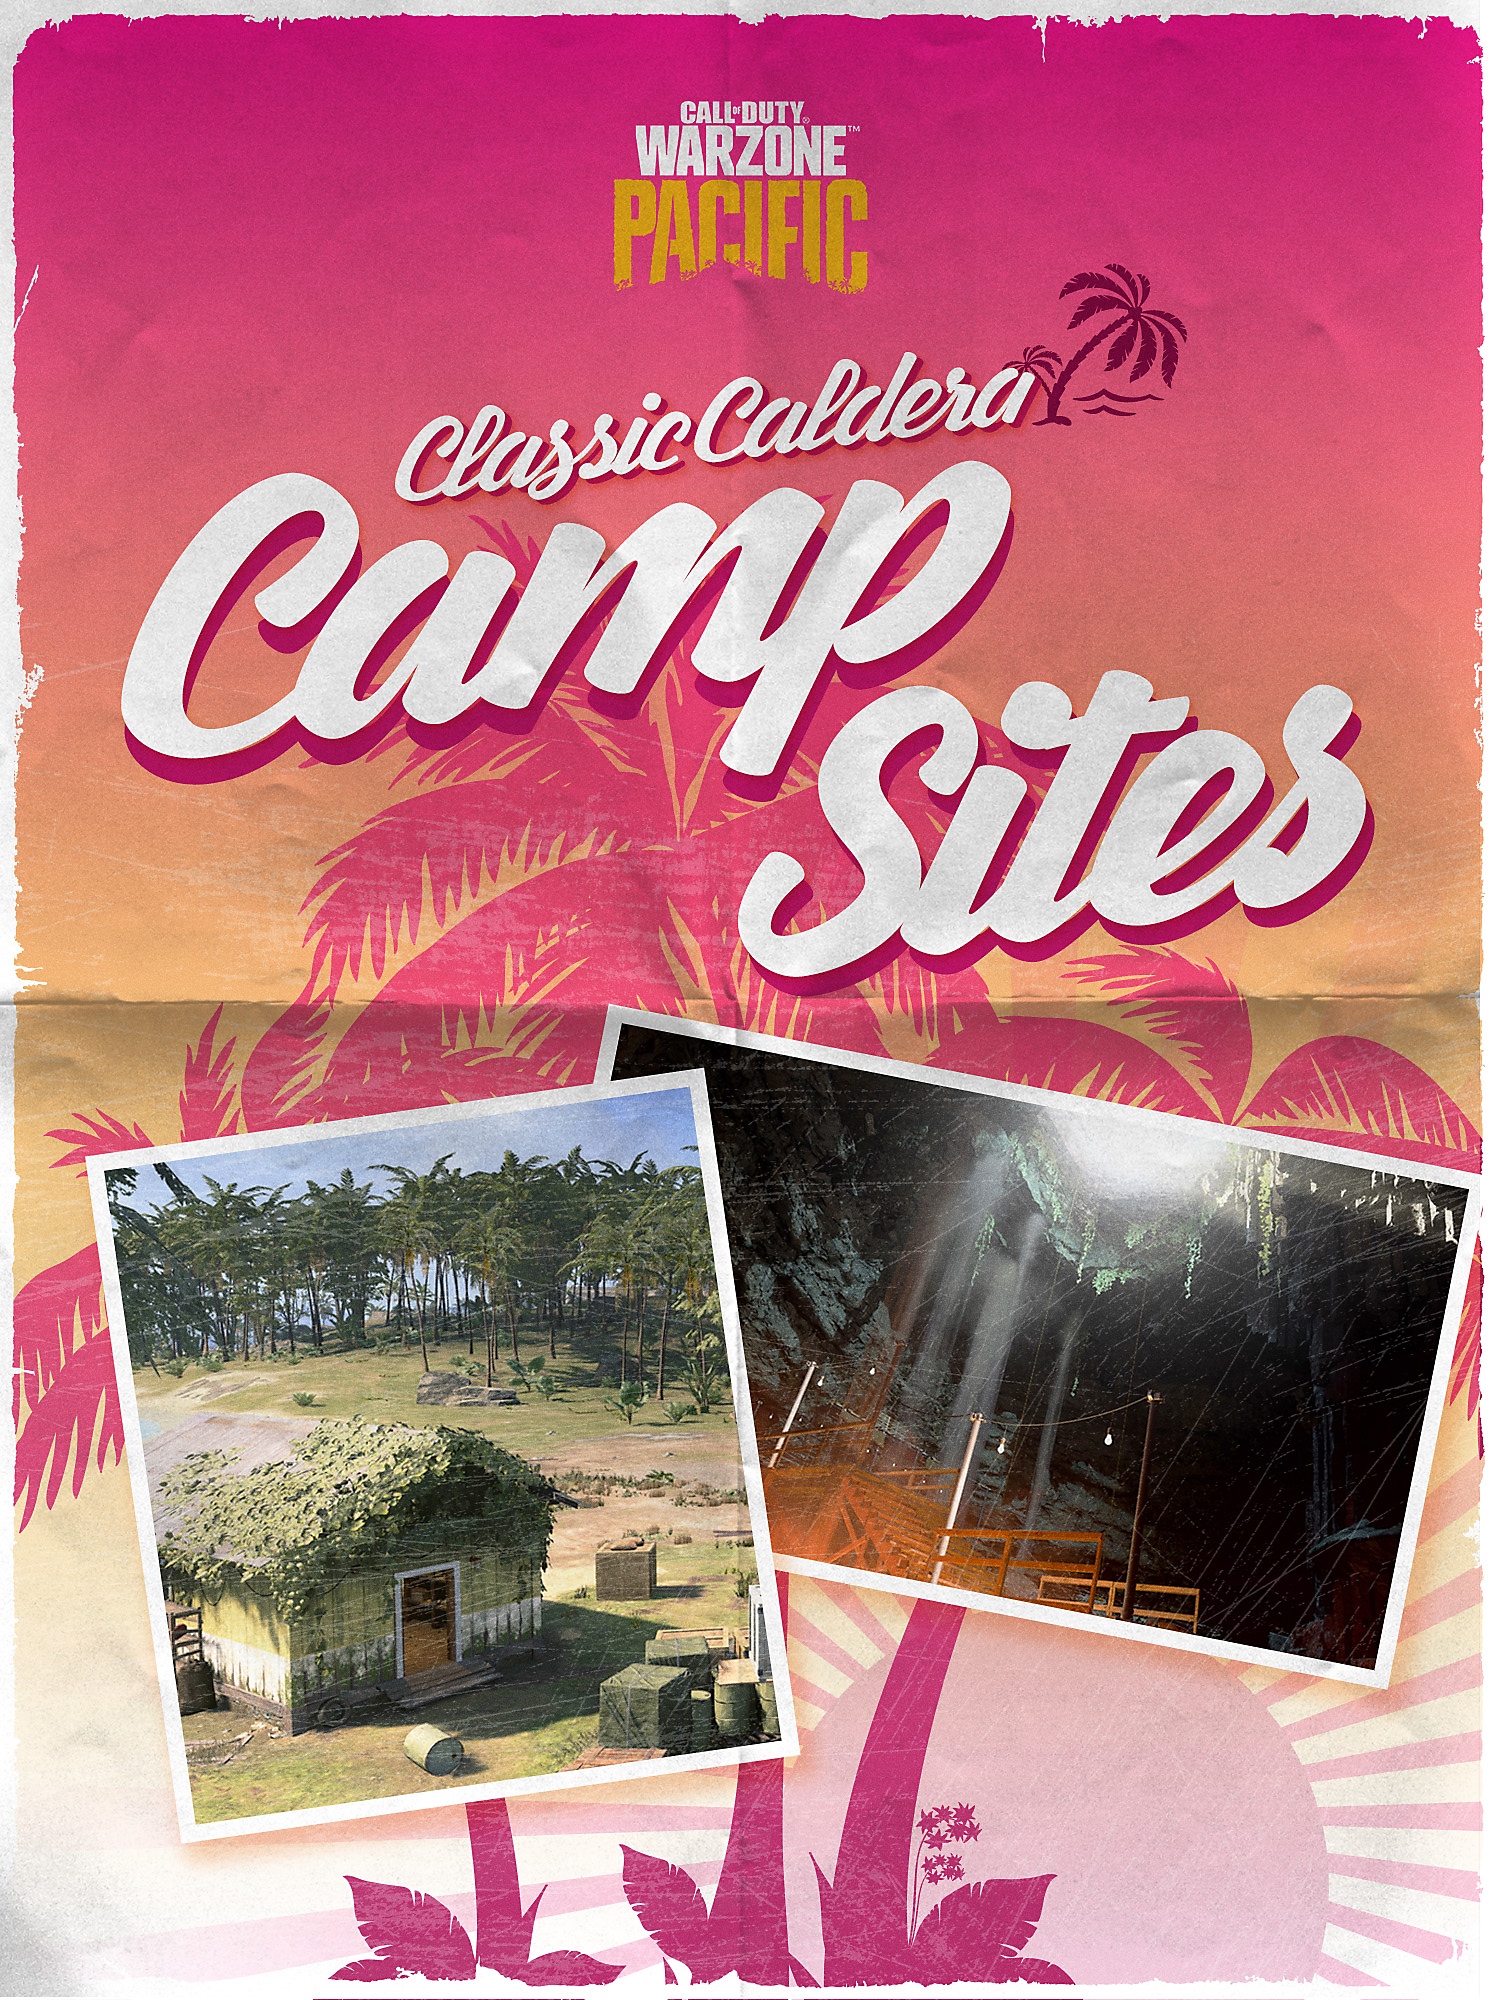 หน้าปกโบรชัวร์ Classic Caldera Campsites